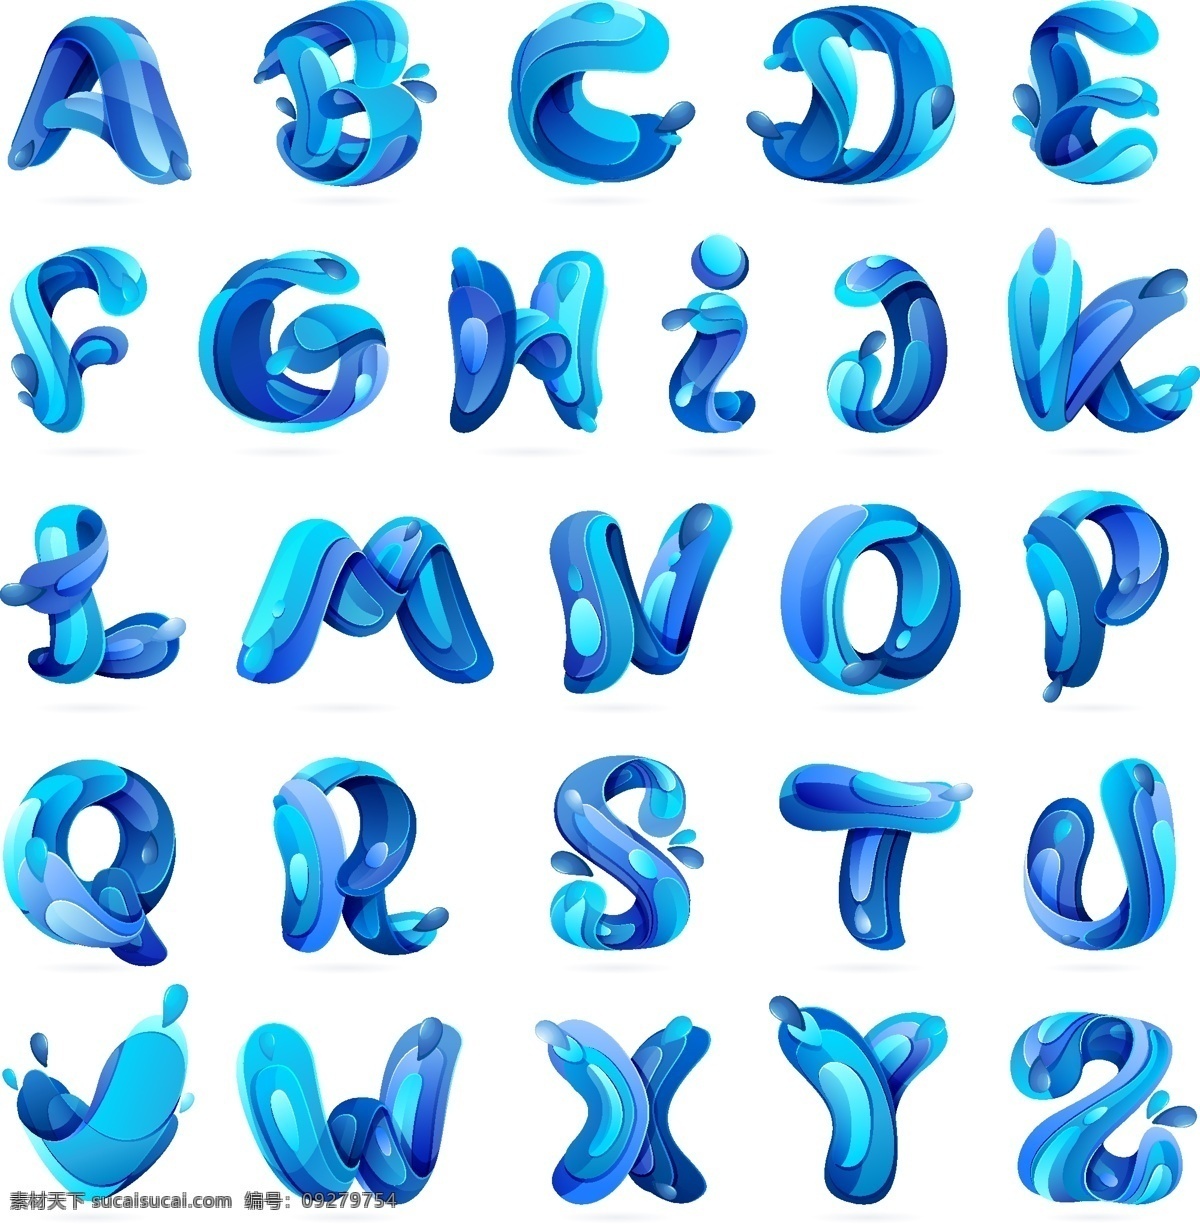 创意 蓝色 字母 矢量 26个 共享 底纹边框 其他素材 白色